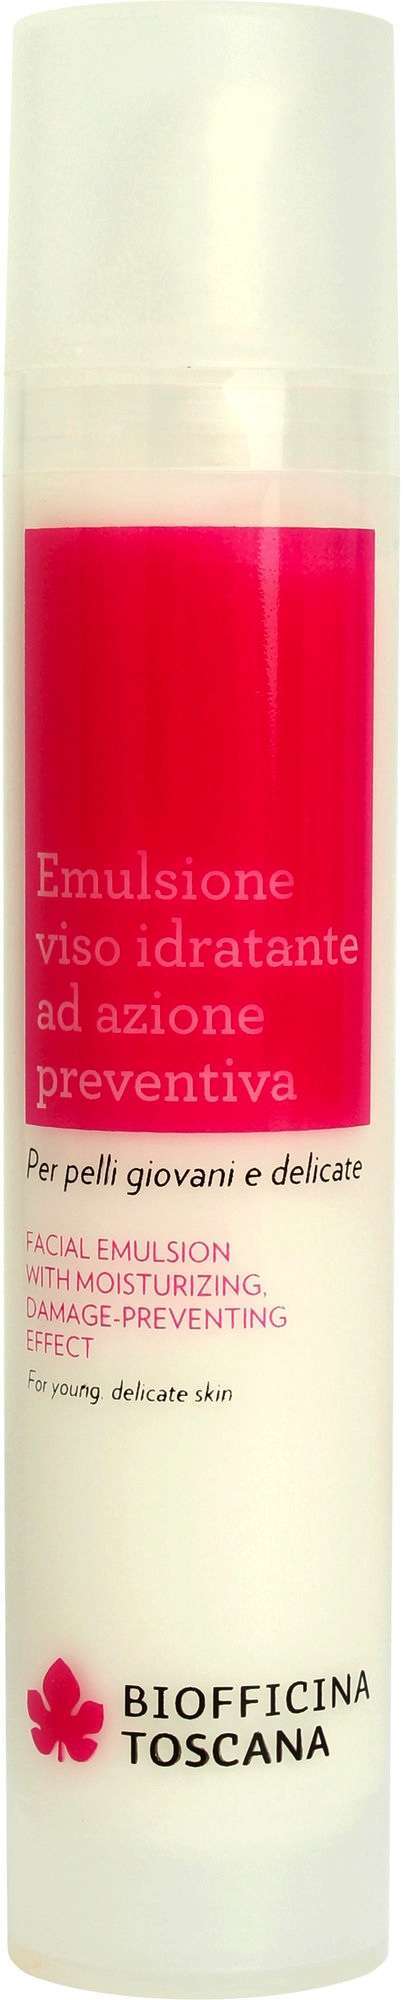 Emulsione viso idratante ad azione preventiva Biofficina Toscana